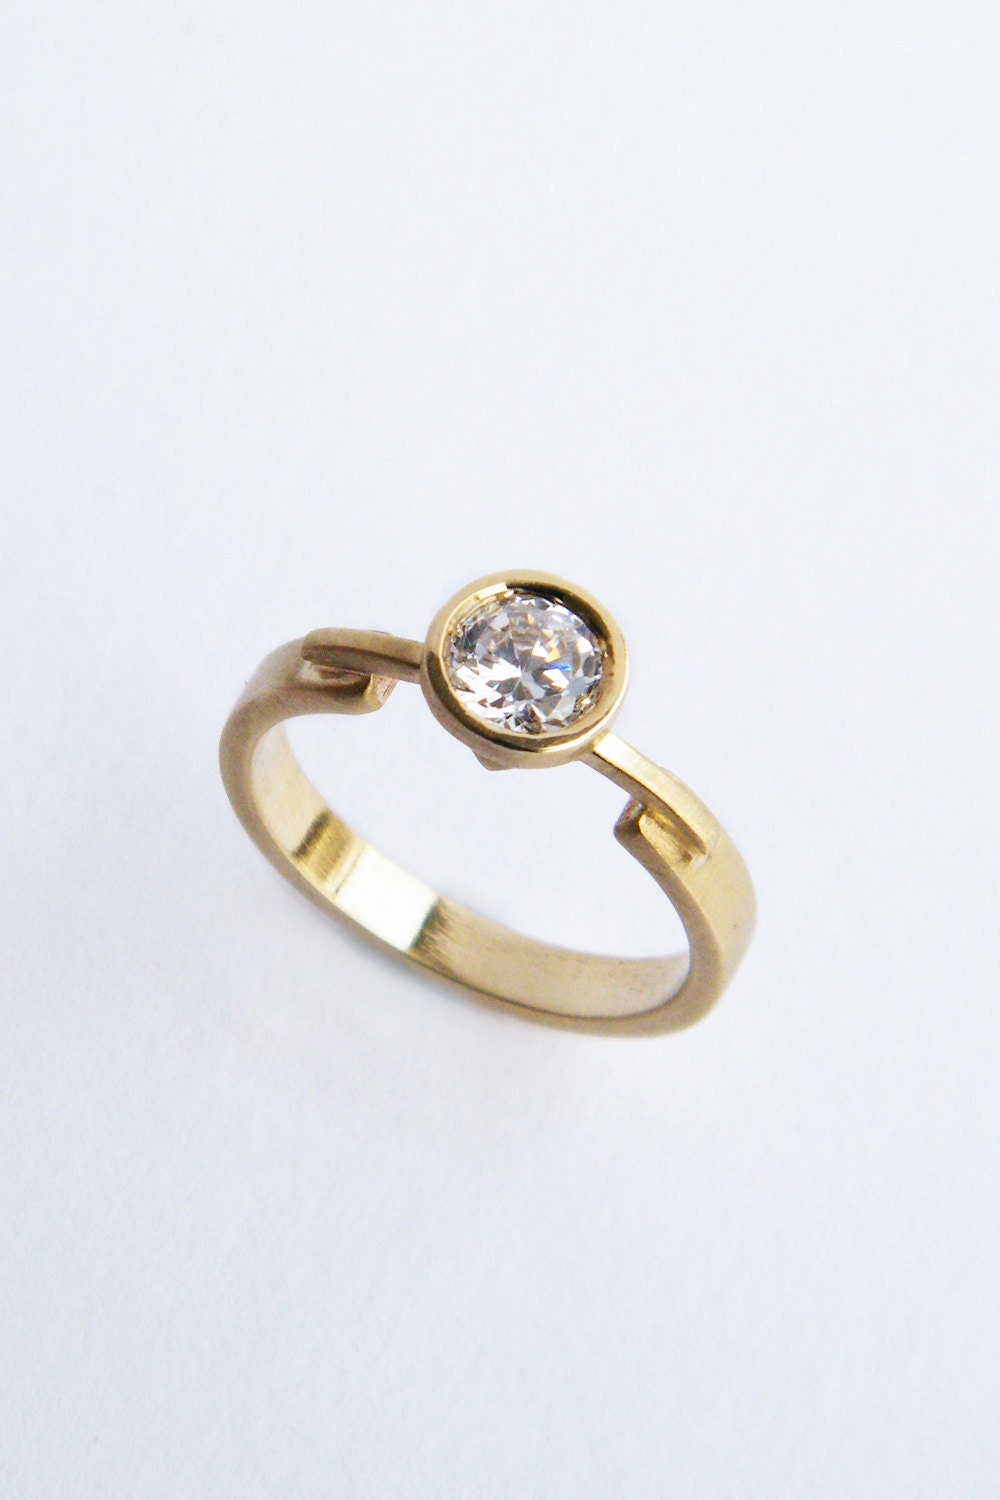 Sasha unique diamond engagement ring modern engagement ring | Etsy